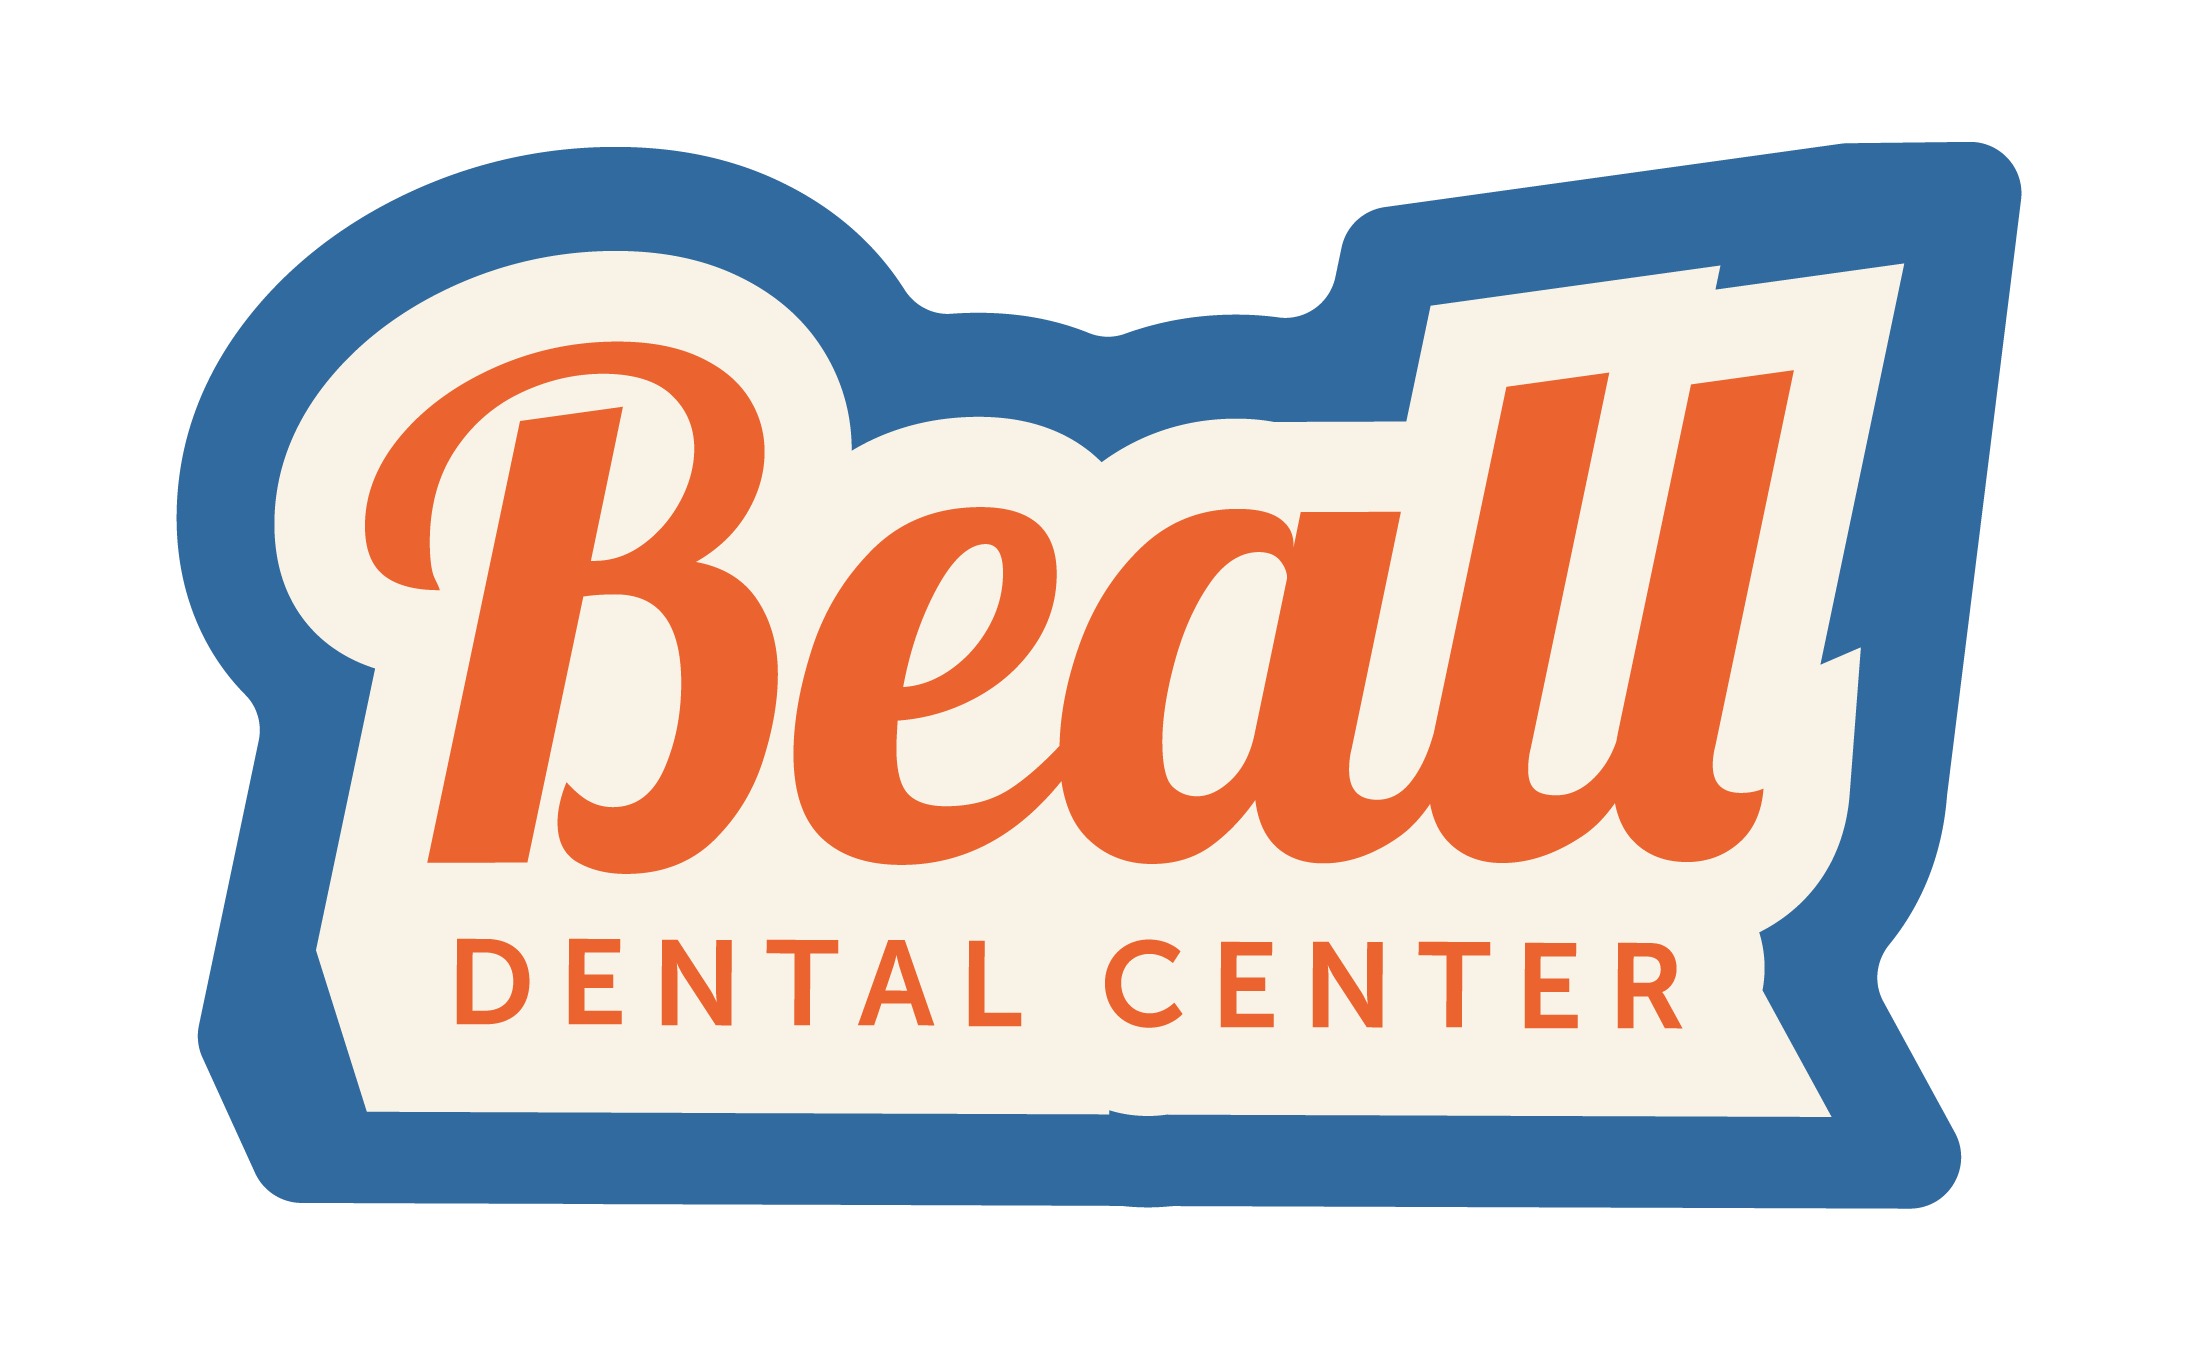 Beall Dental Center Logo